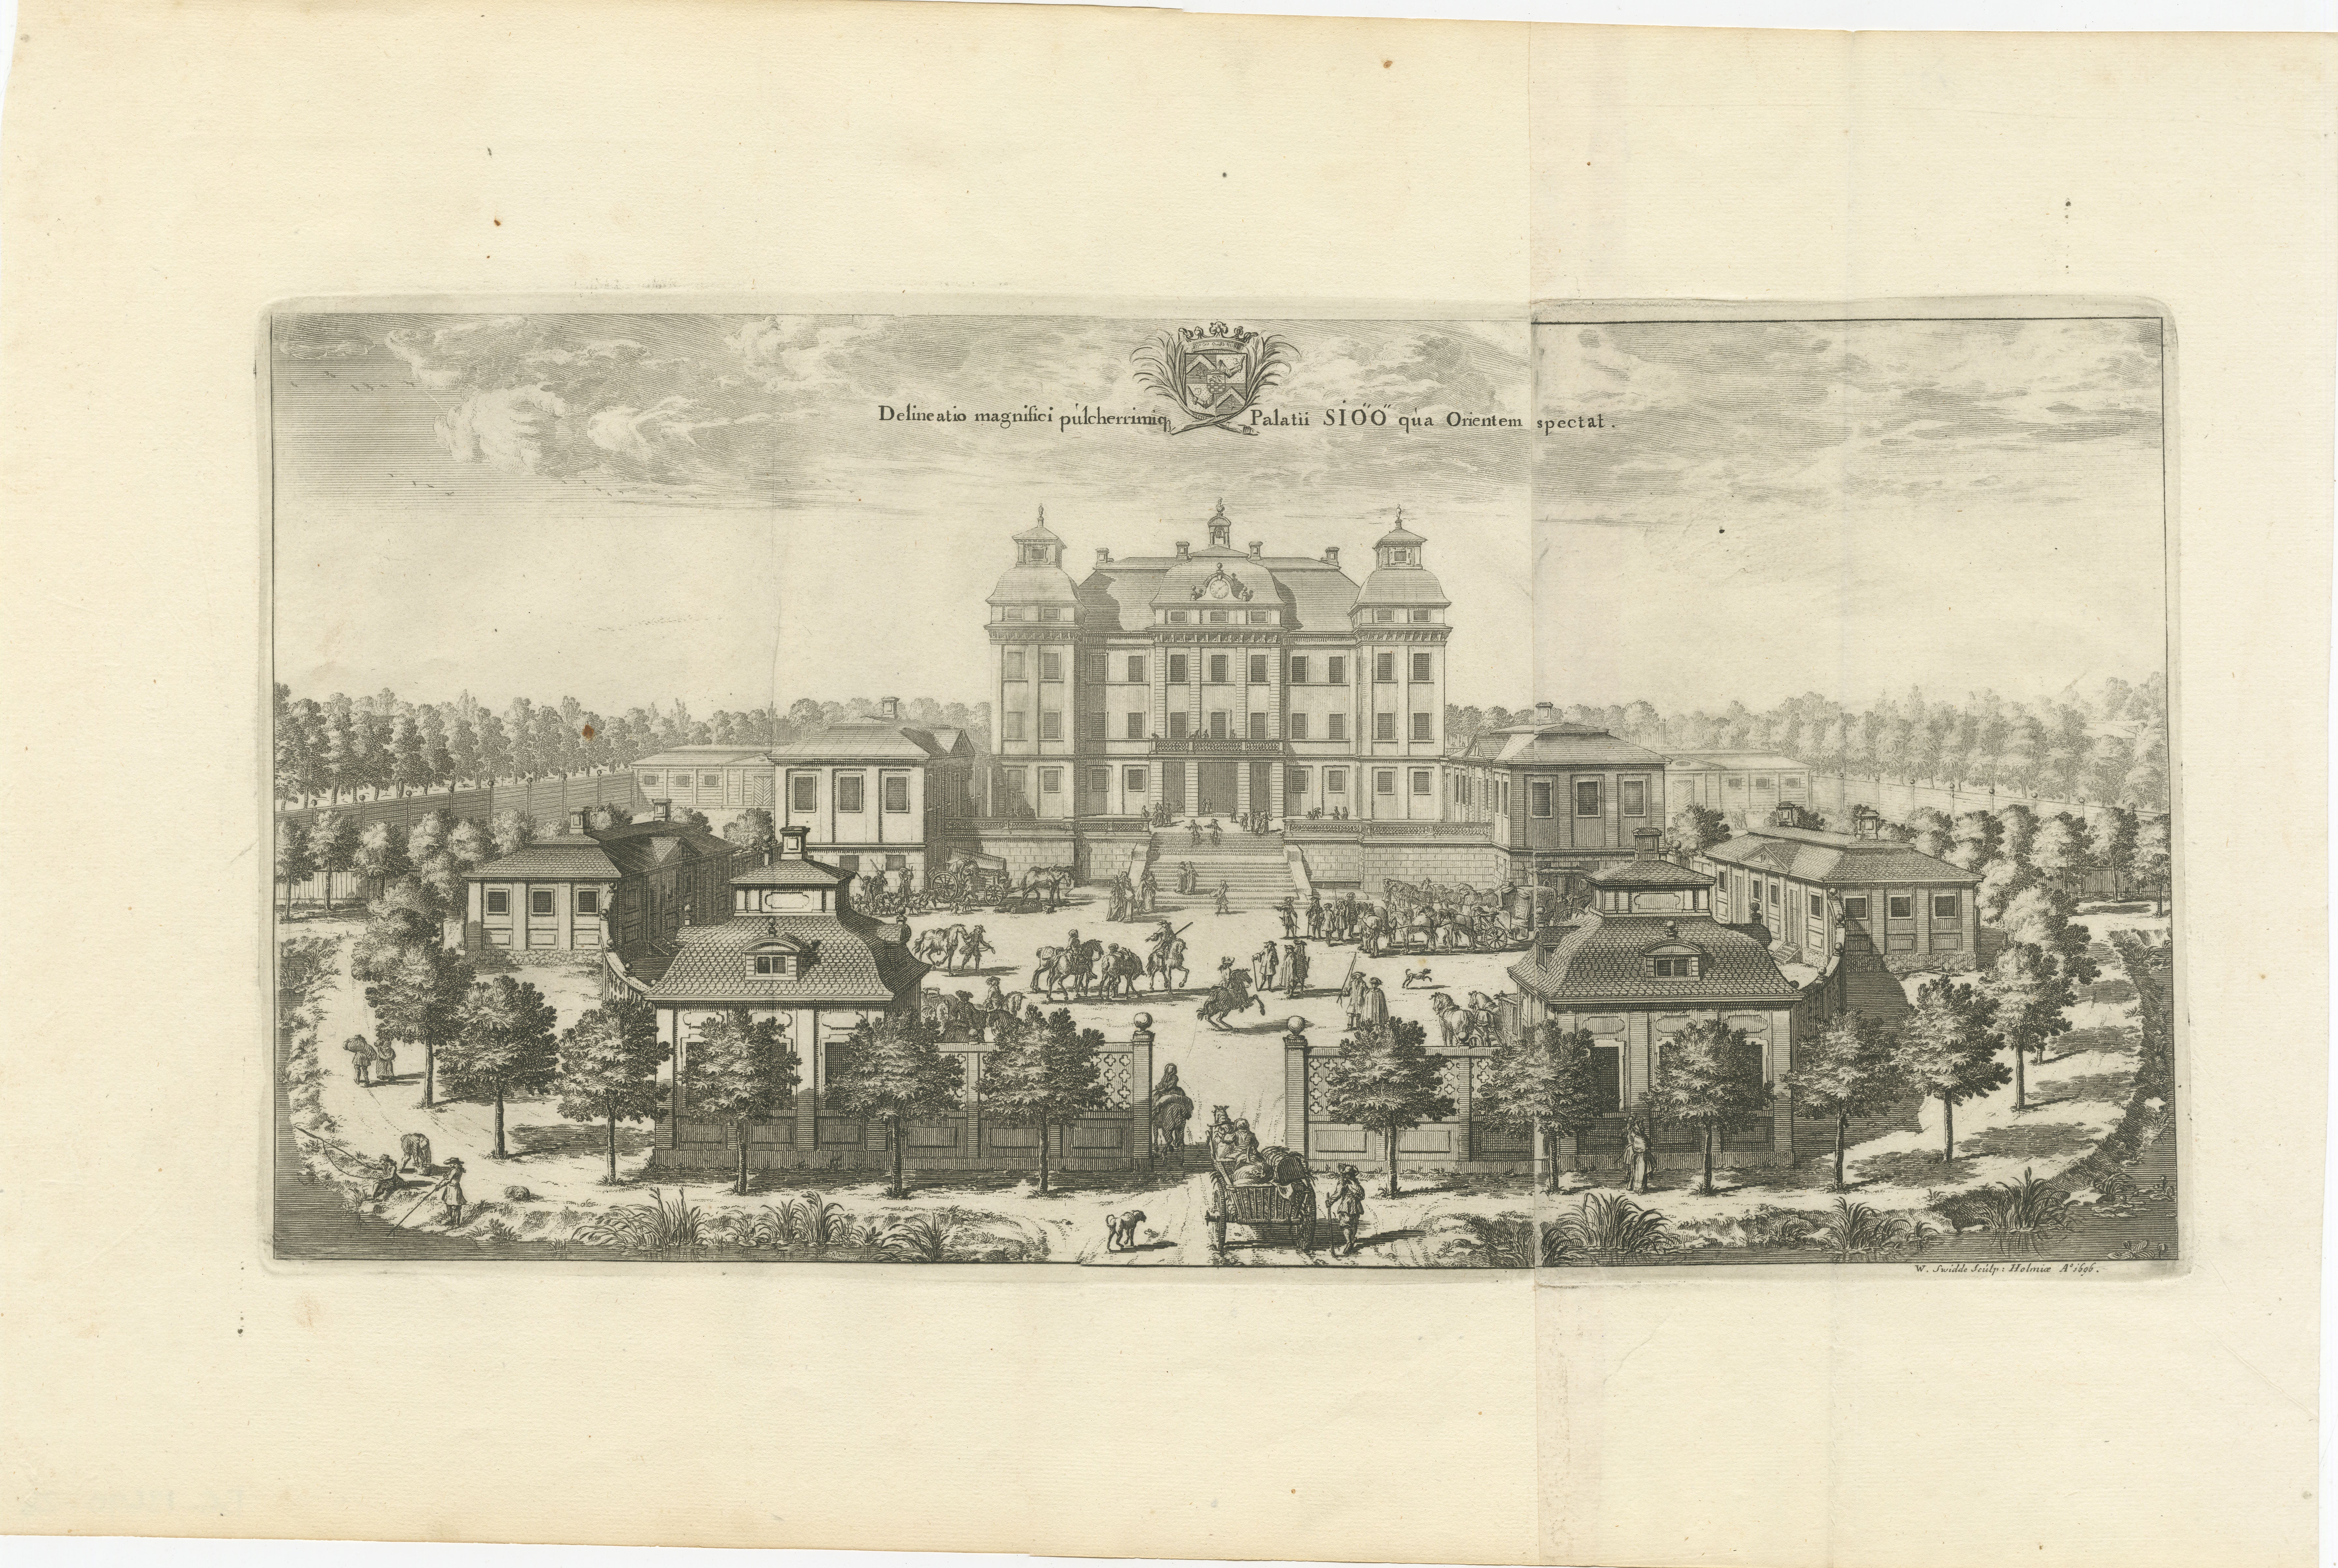 Ein Stich von Willem Swidde aus dem Jahr 1696. Der Druck zeigt ein palastartiges Anwesen, das von formalen Gärten umgeben ist, eine übliche Darstellung der barocken Architektur und Landschaftsgestaltung. Das Hauptgebäude wird von zwei symmetrisch